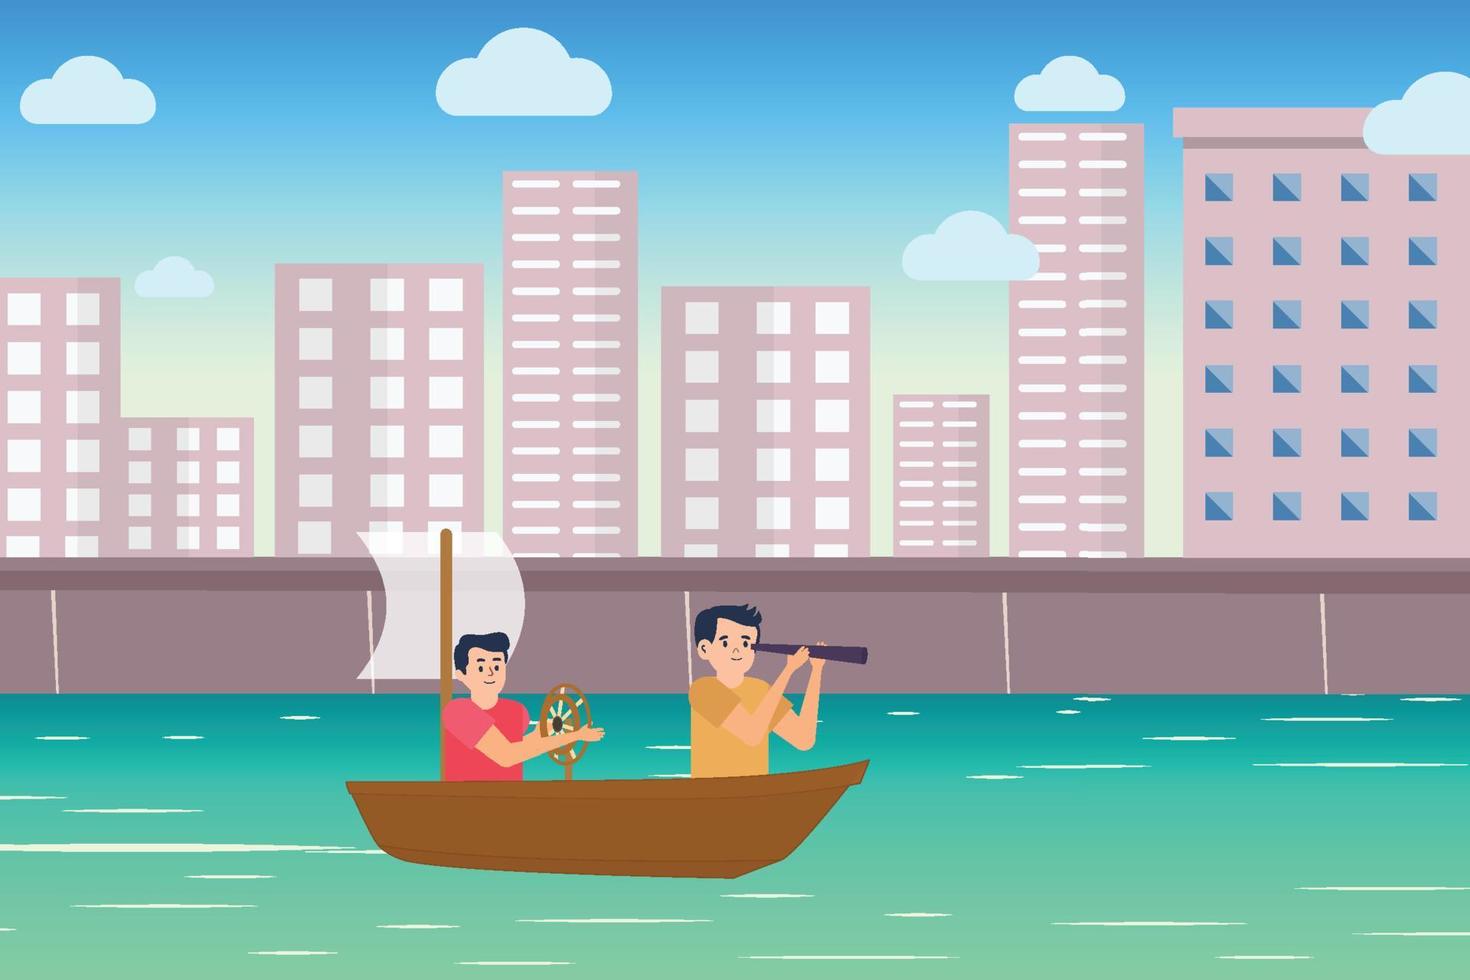 flache charakterillustration des kleinen kindes mit einem kleinen boot und einem städtischen see. Kinder spielen mit dem Boot auf einem See mit Stadtbildhintergrund. spielbare Kinder mit Zielfernrohr und Spielzeugschiff auf dem Wasser. vektor